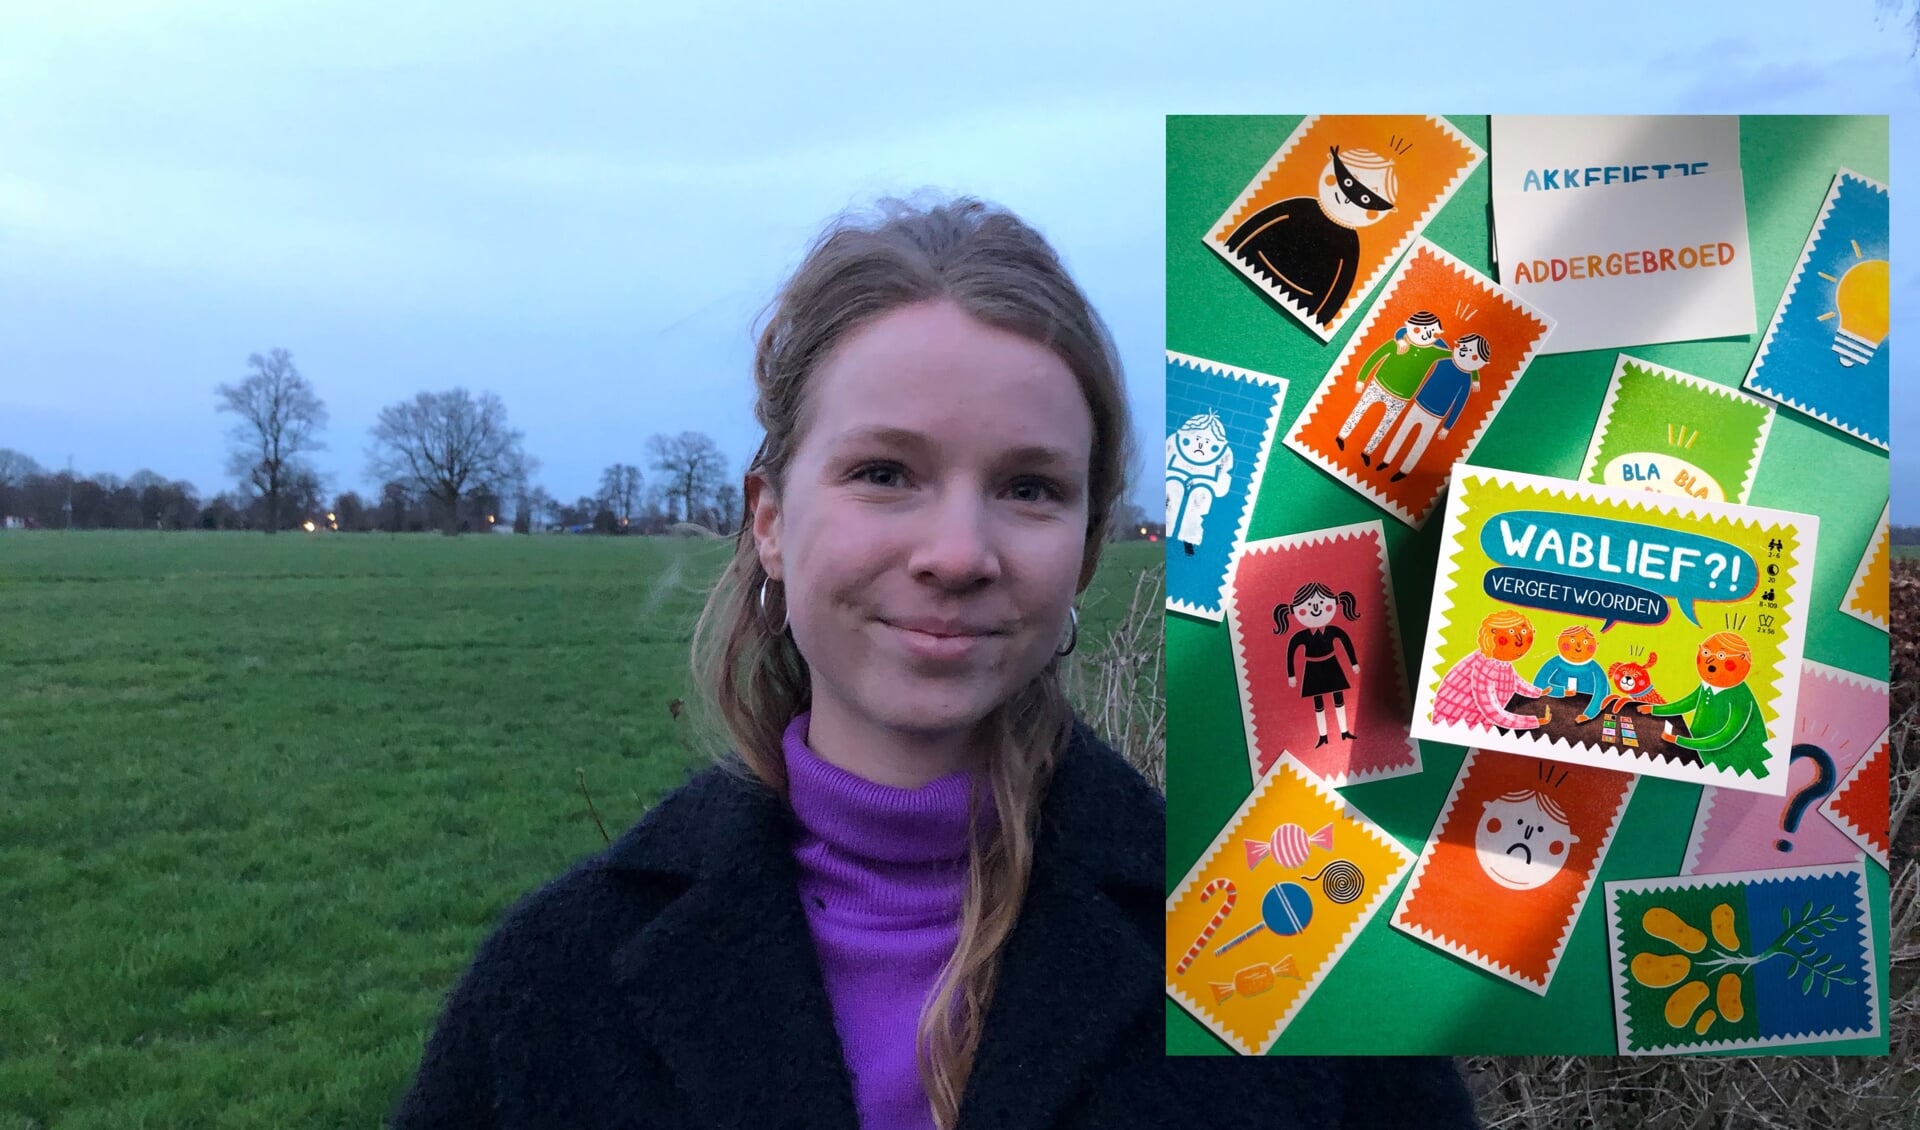 Marinca Uijland hoopt dat de crowdfunding voldoende geld oplevert en dat ze haar eigen kaartspel op de markt kan gaan brengen.